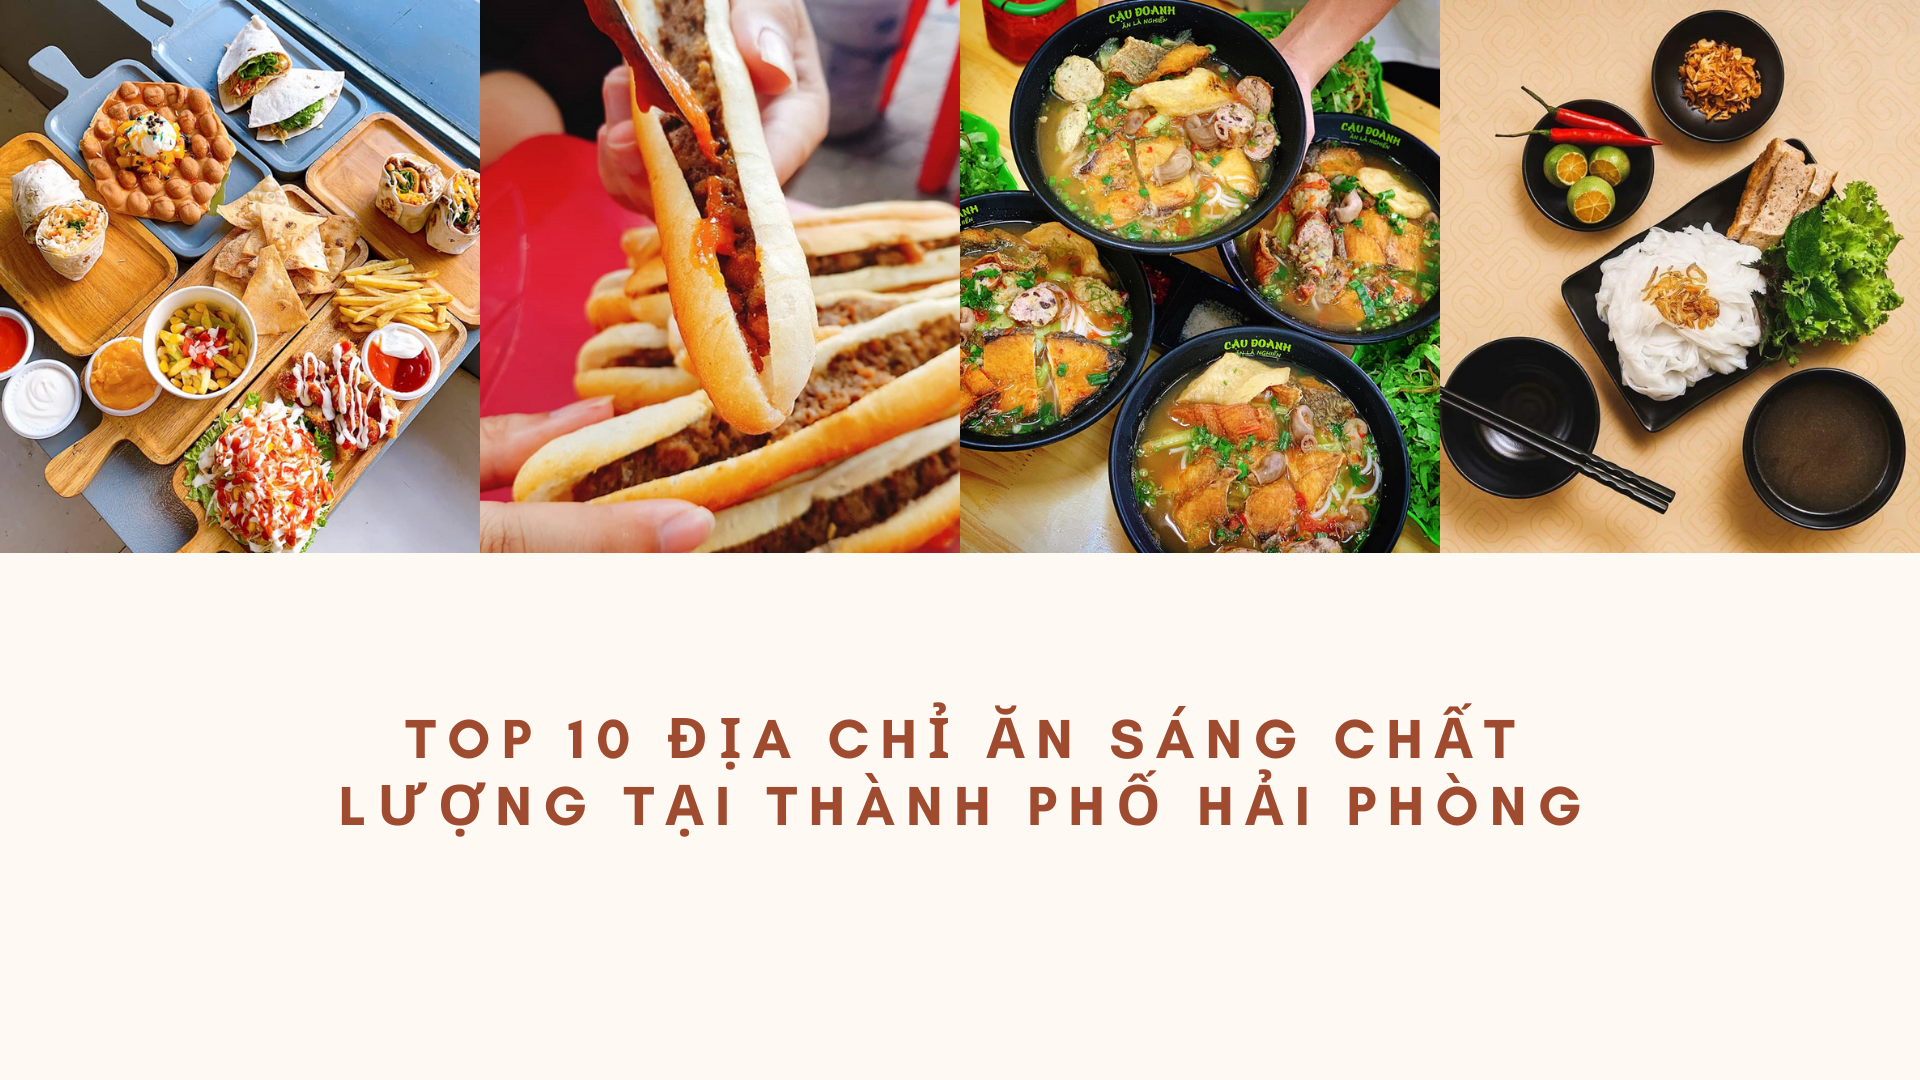 Top 10 địa chỉ ăn sáng chất lượng tại thành phố Hải Phòng